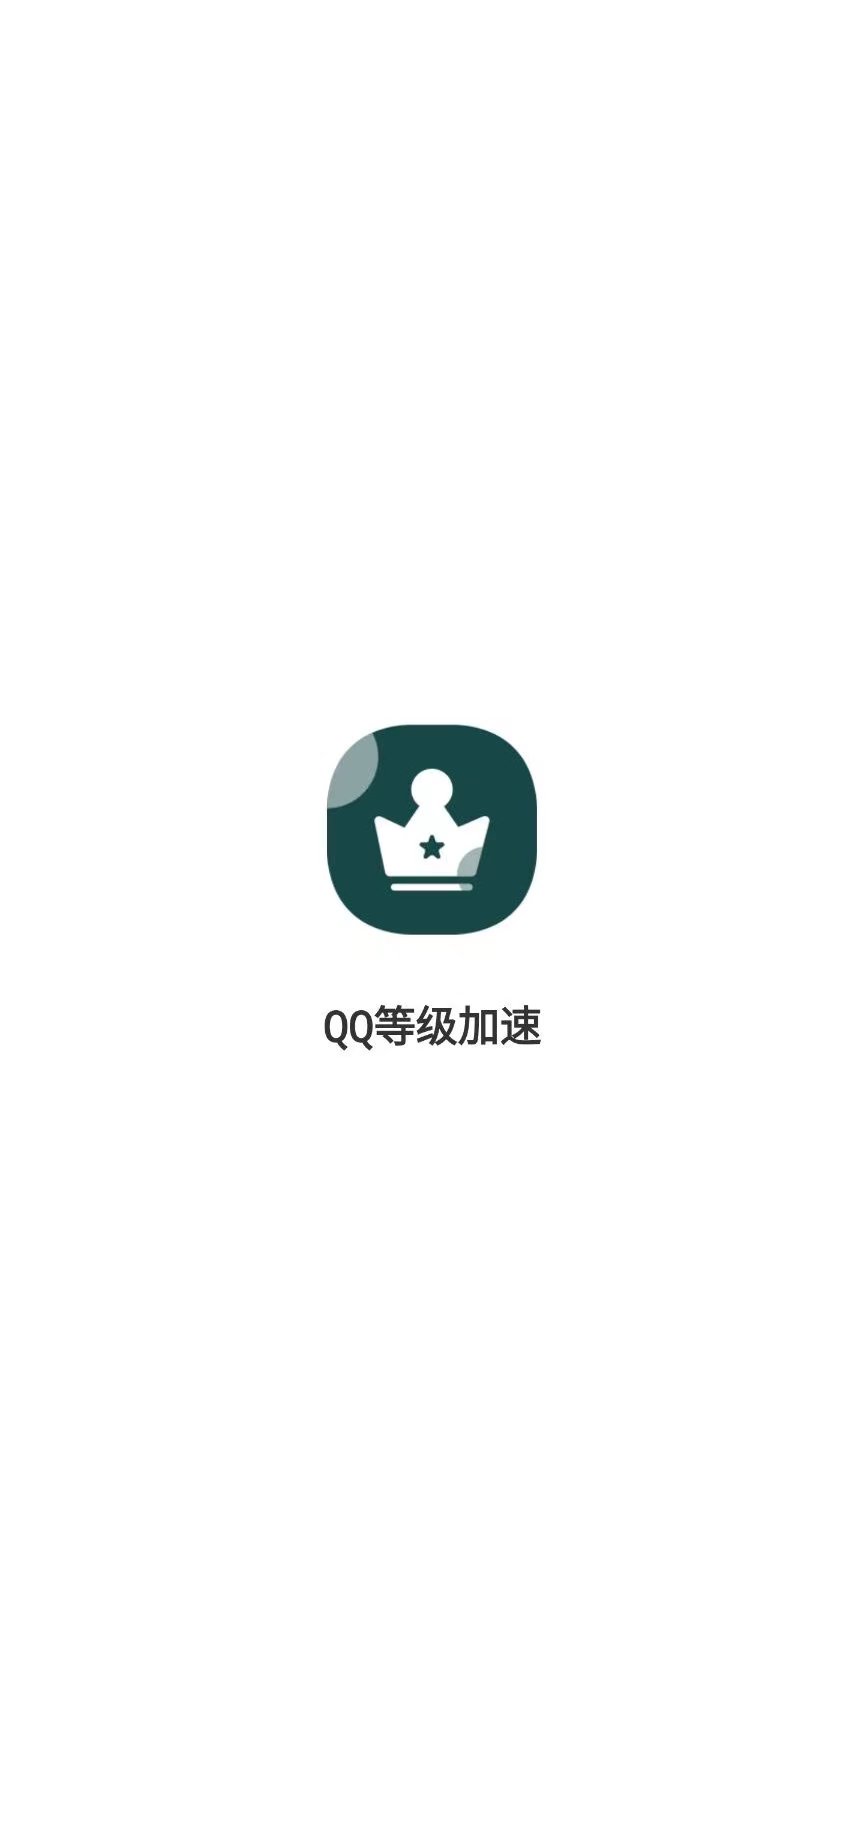 QQ等级加速软件 任务一键完成，无需密码